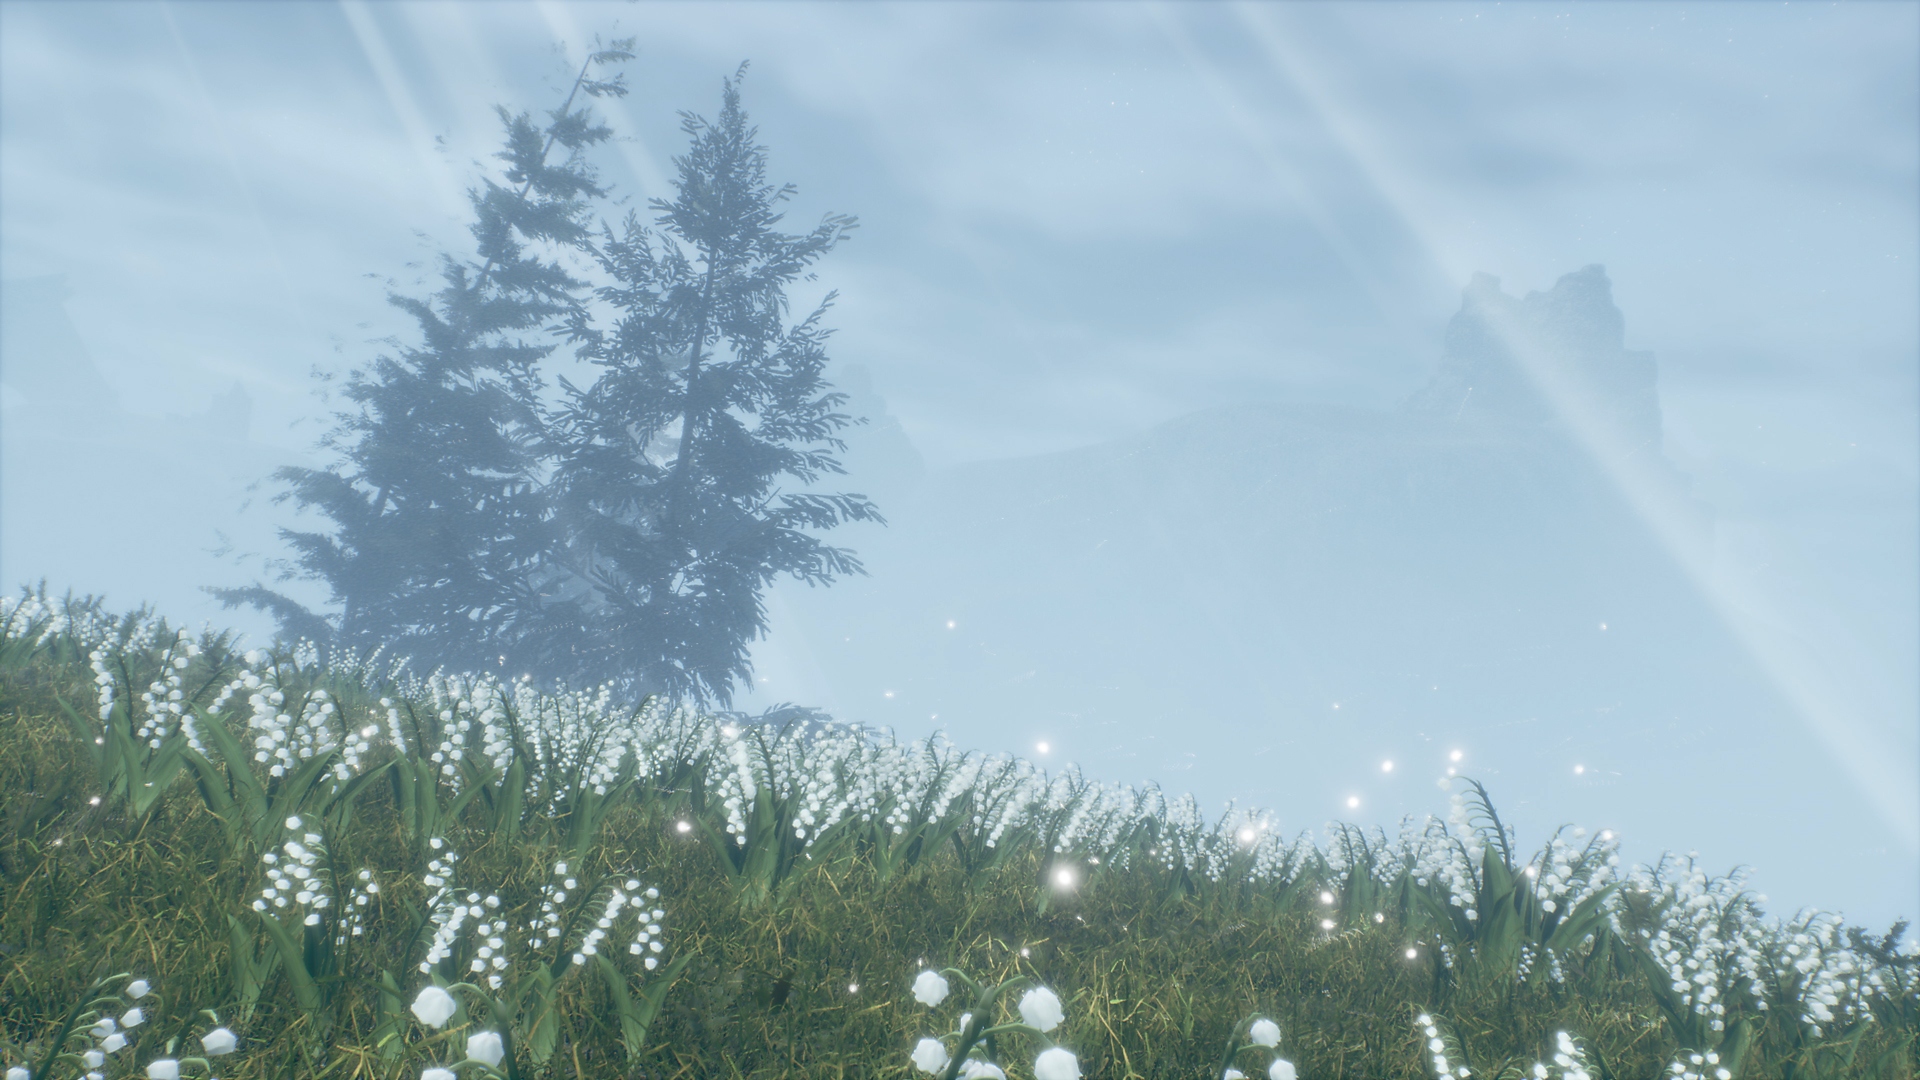 Istantanea della schermata di Valkyrie Elysium che mostra due alberi in un'area erbosa